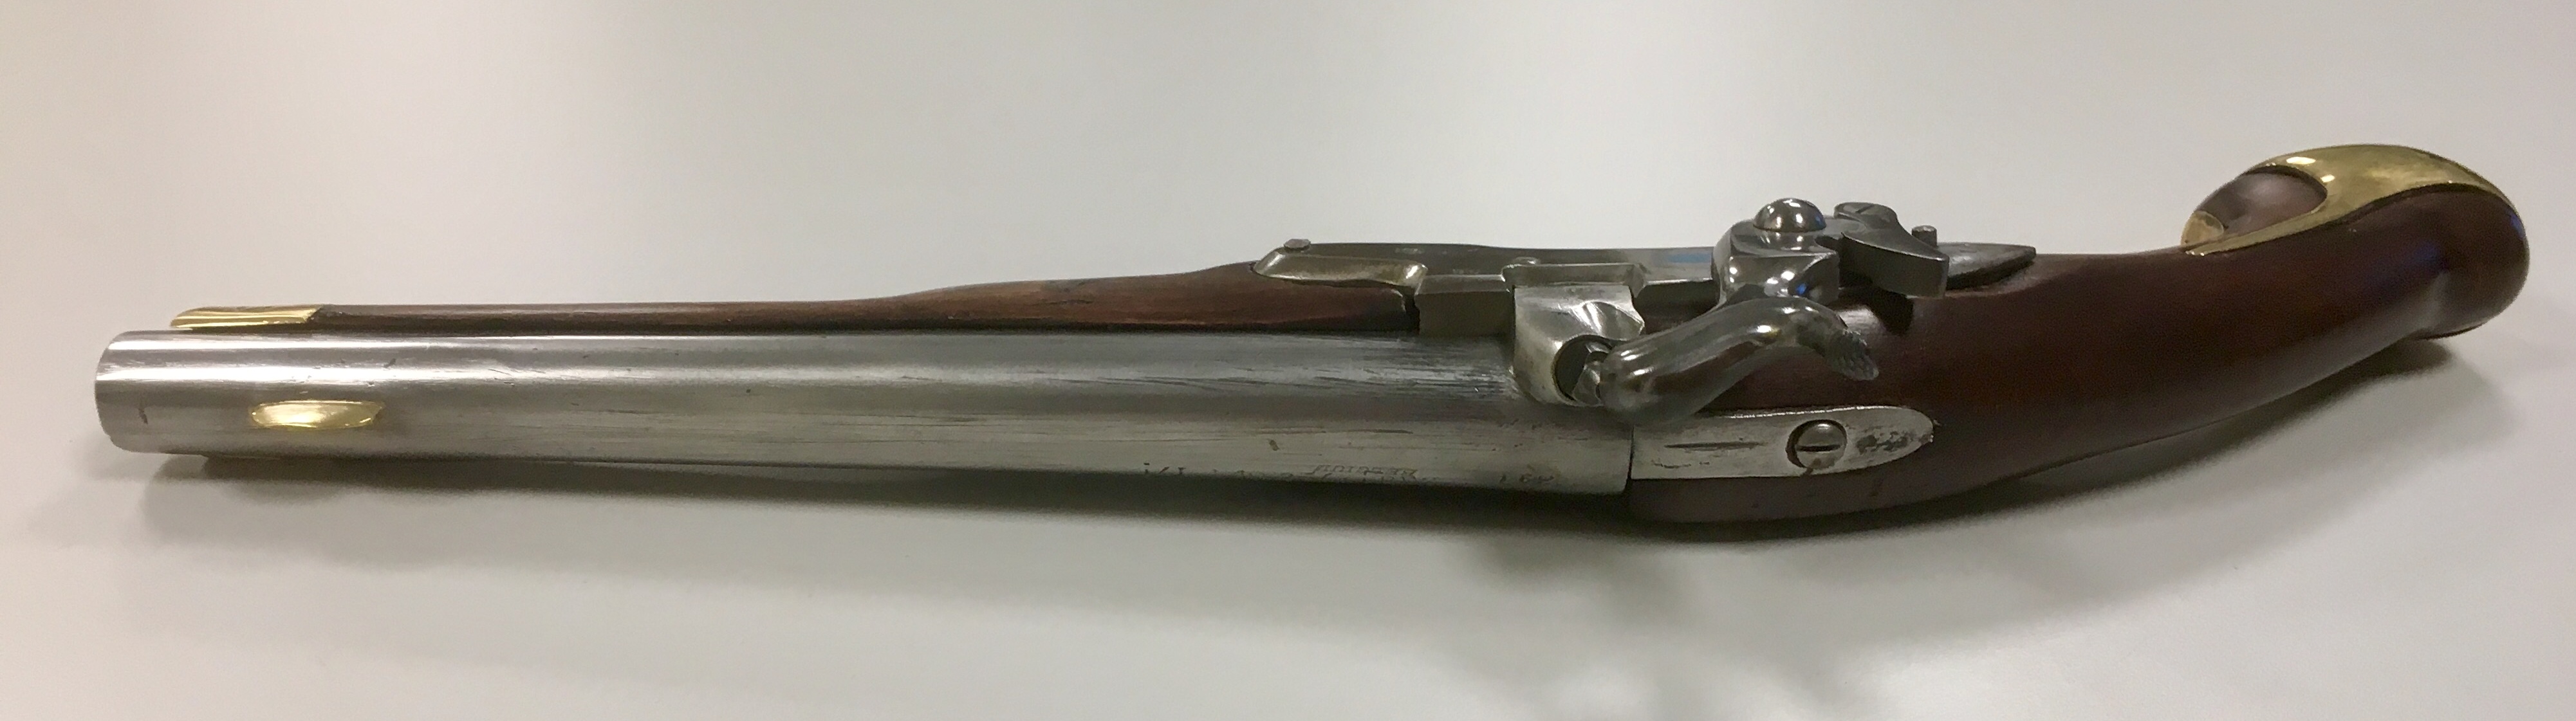 ./guns/pistol/bilder/Pistol-Dansk-Norsk-1772-1839-Marine-162-6.jpg